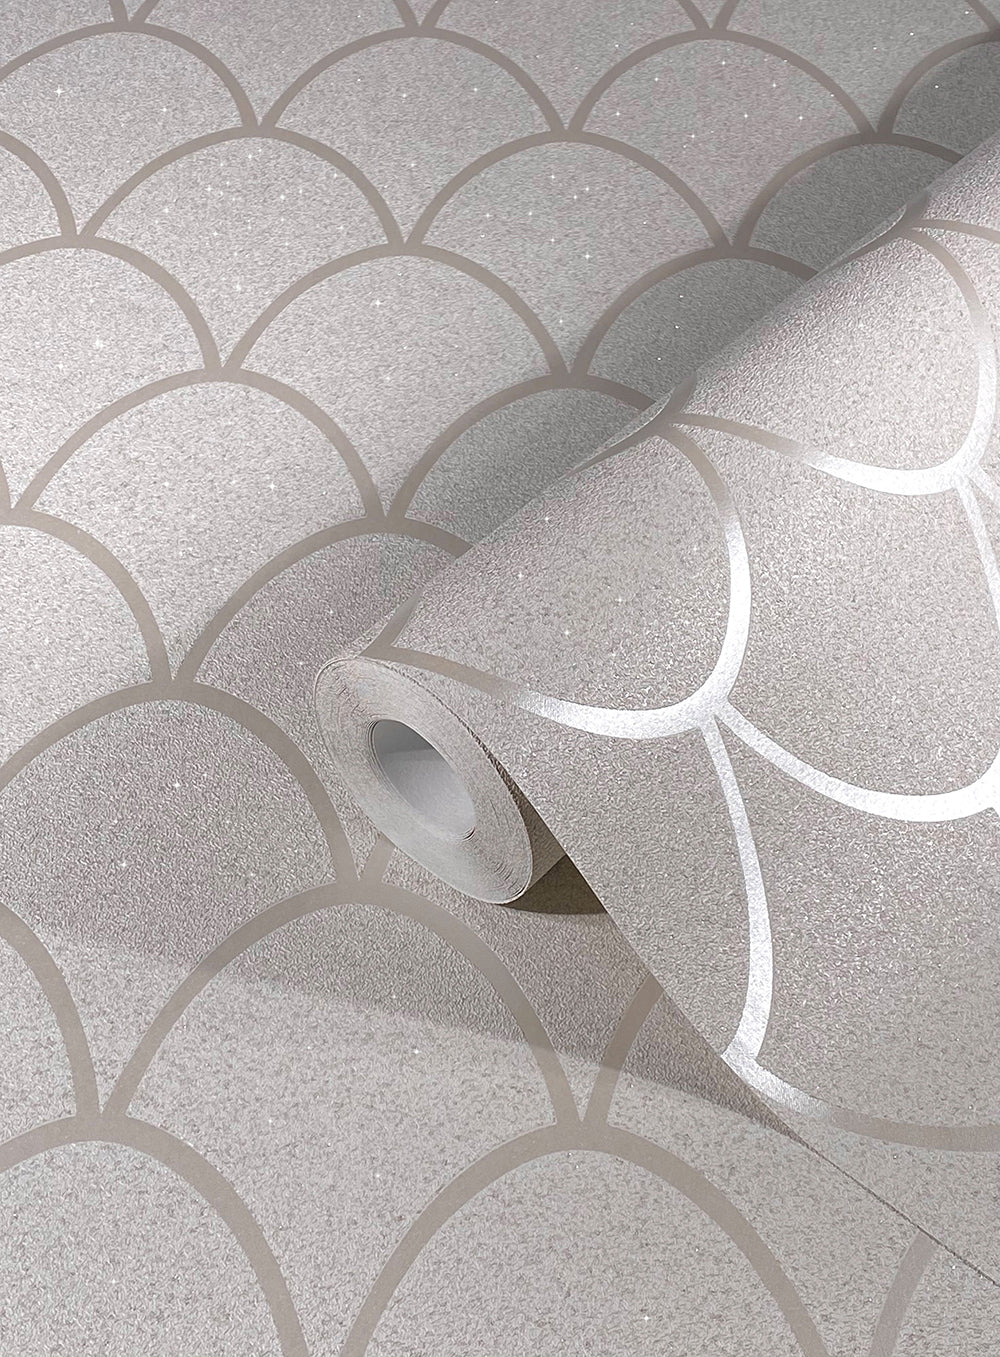 Schoner Wohnen New Spirit - Shimmery  Deco Arches art deco wallpaper Marburg    